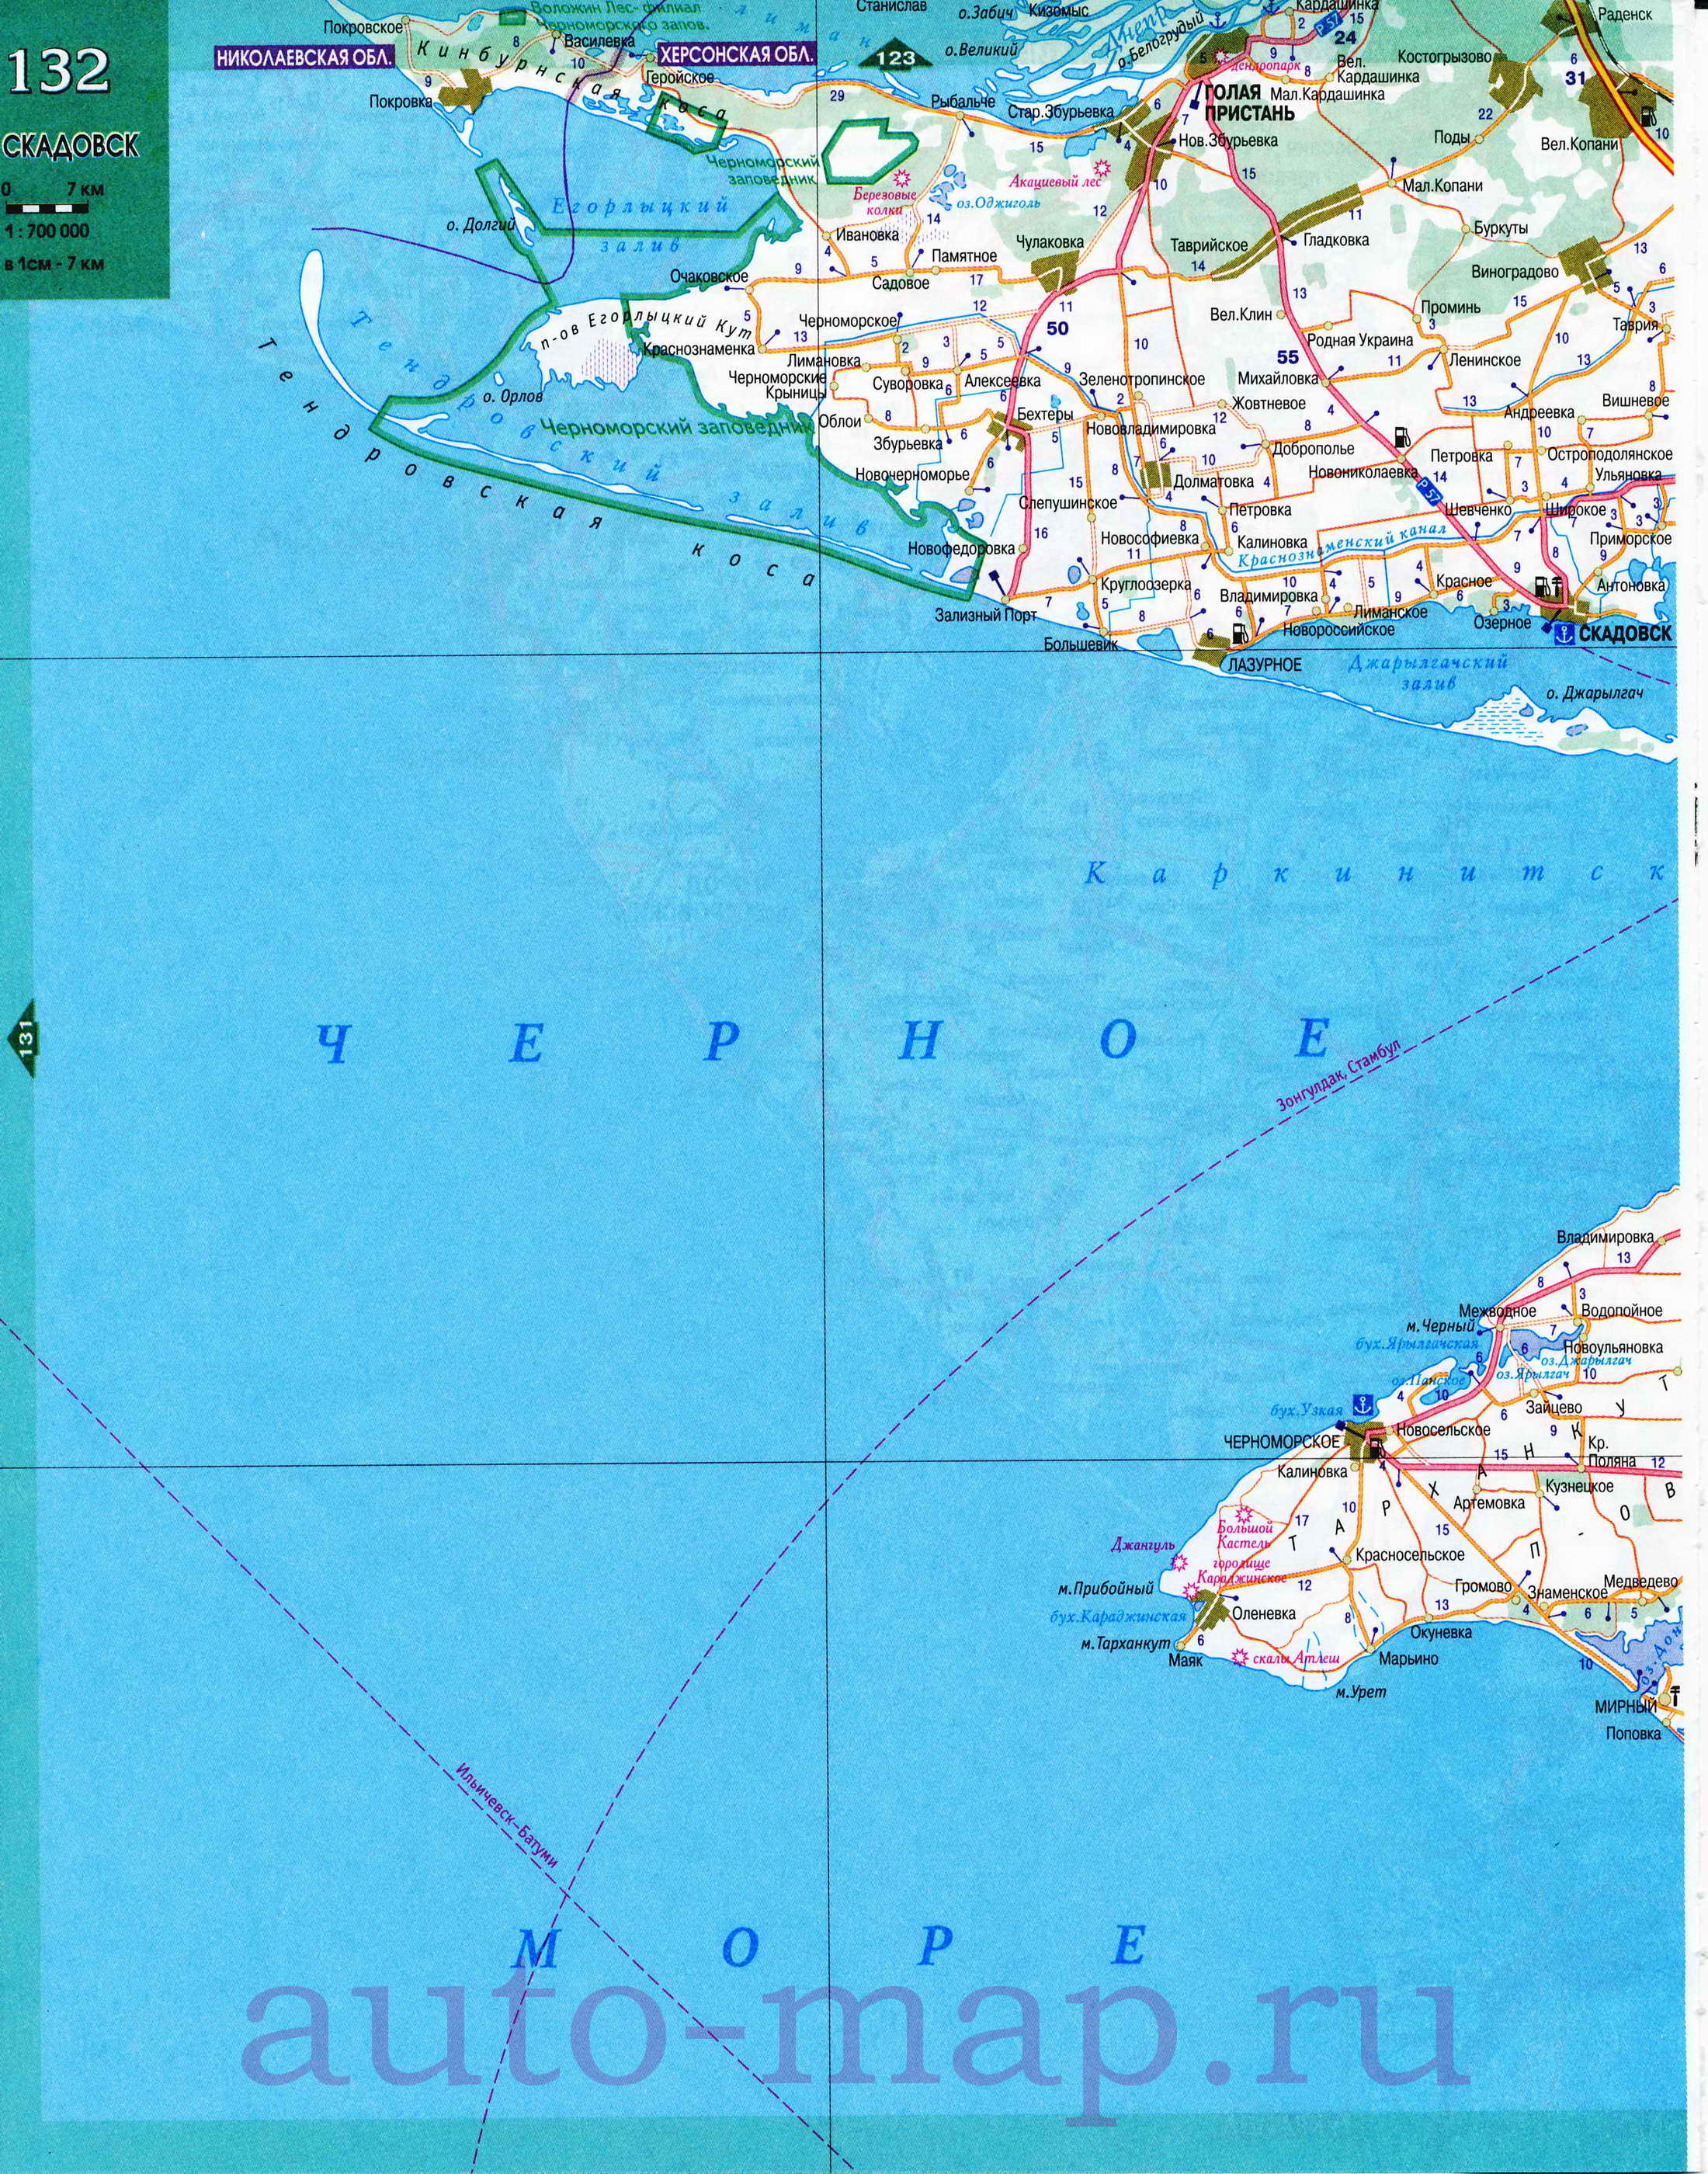 Карта черноморского побережья Украины. Подробная карта берега Черного моря - побережье Украины, C0 - 